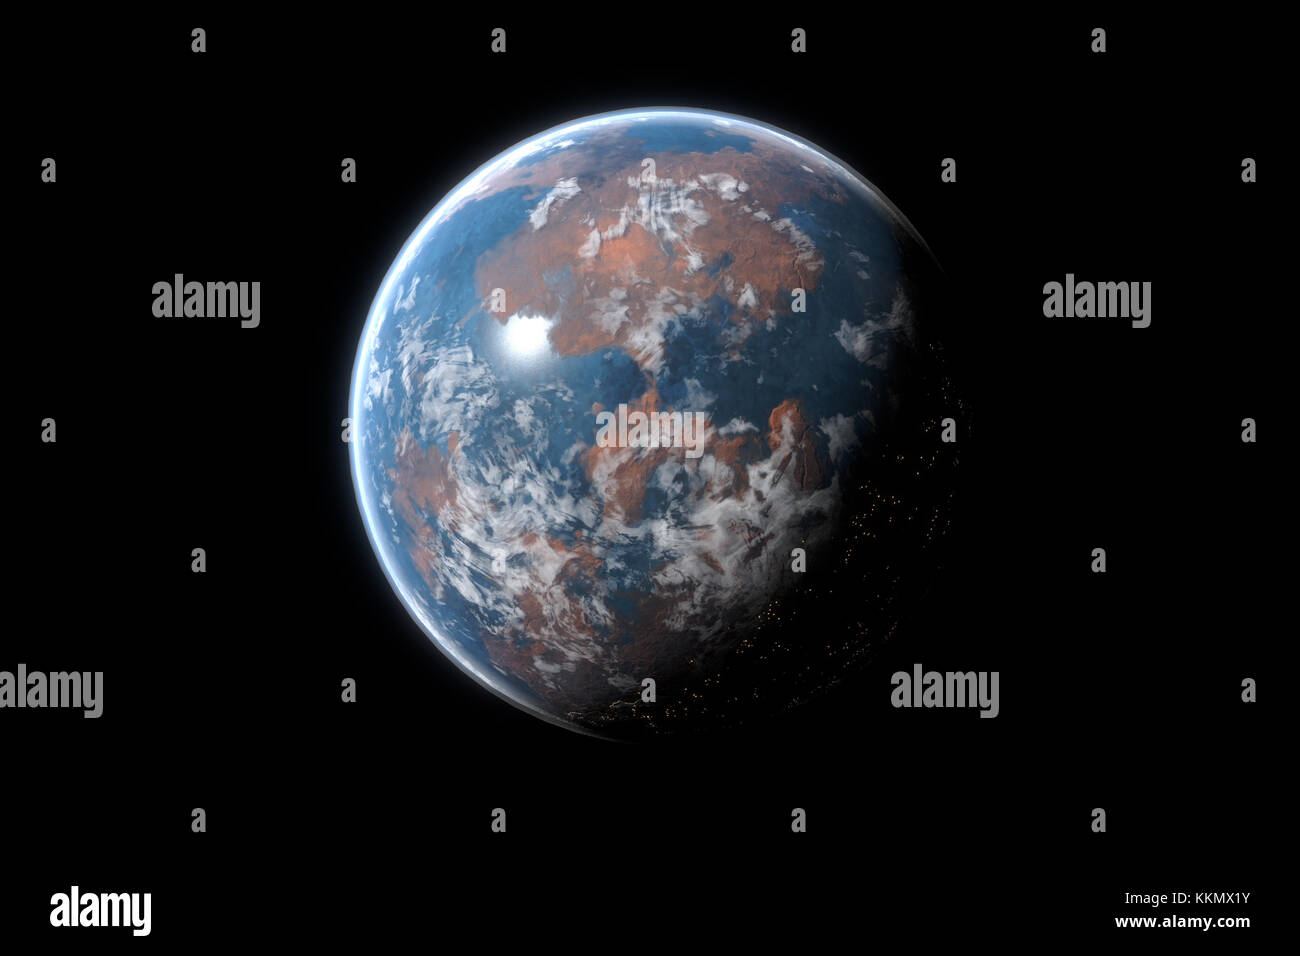 Cette image représente une planète désert générique ou exoplanète avec l'atmosphère et de la vie. C'est un rendu 3D réaliste Banque D'Images